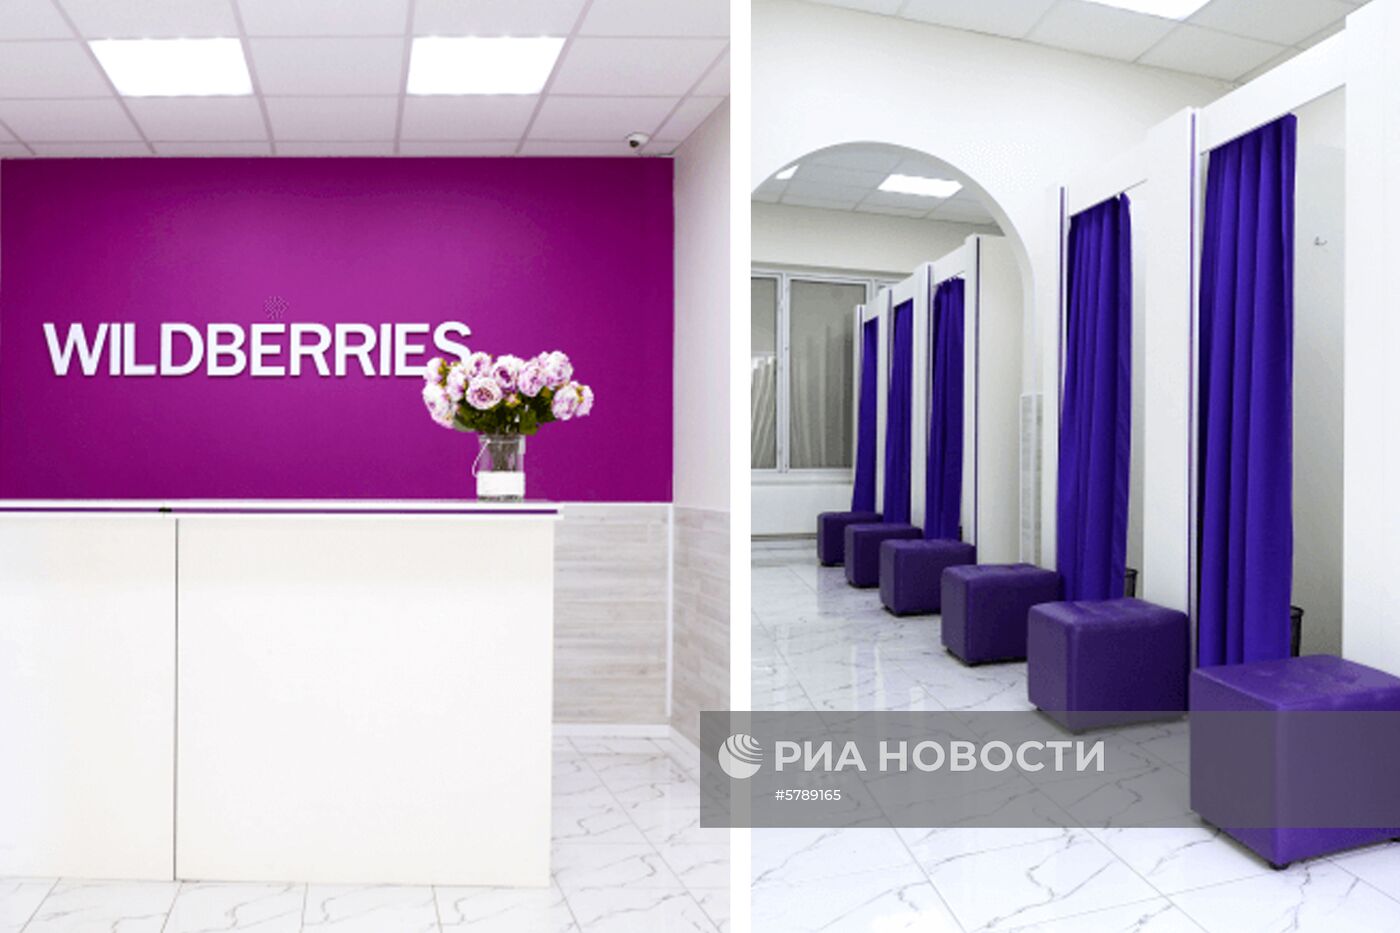 Владелица интернет-магазина Wildberries Т. Бакальчук стала второй женщиной-миллиардером в России